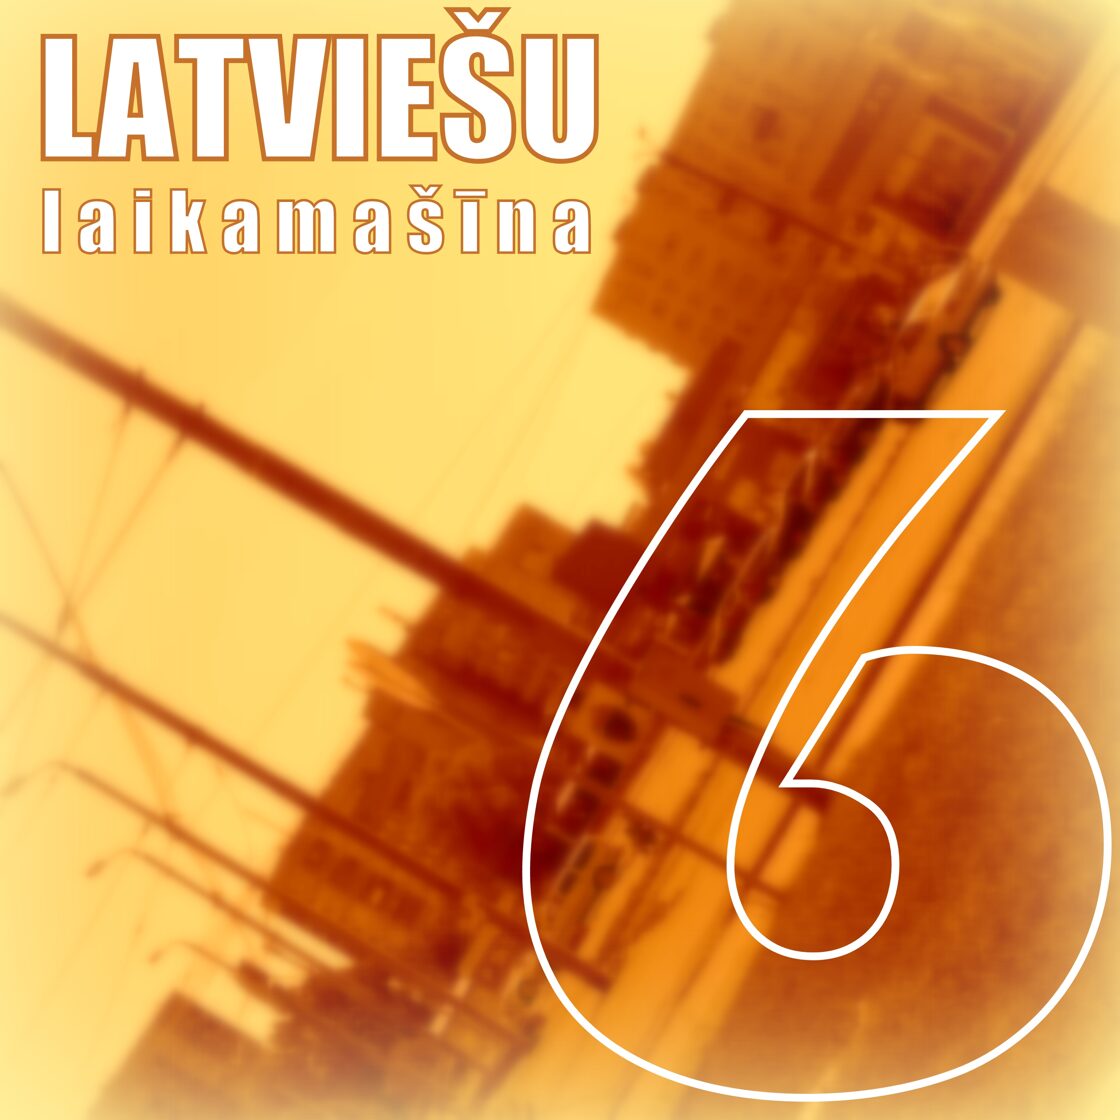 LATVIESU_LAIKAMASINA_6__Prieksa_.jpg